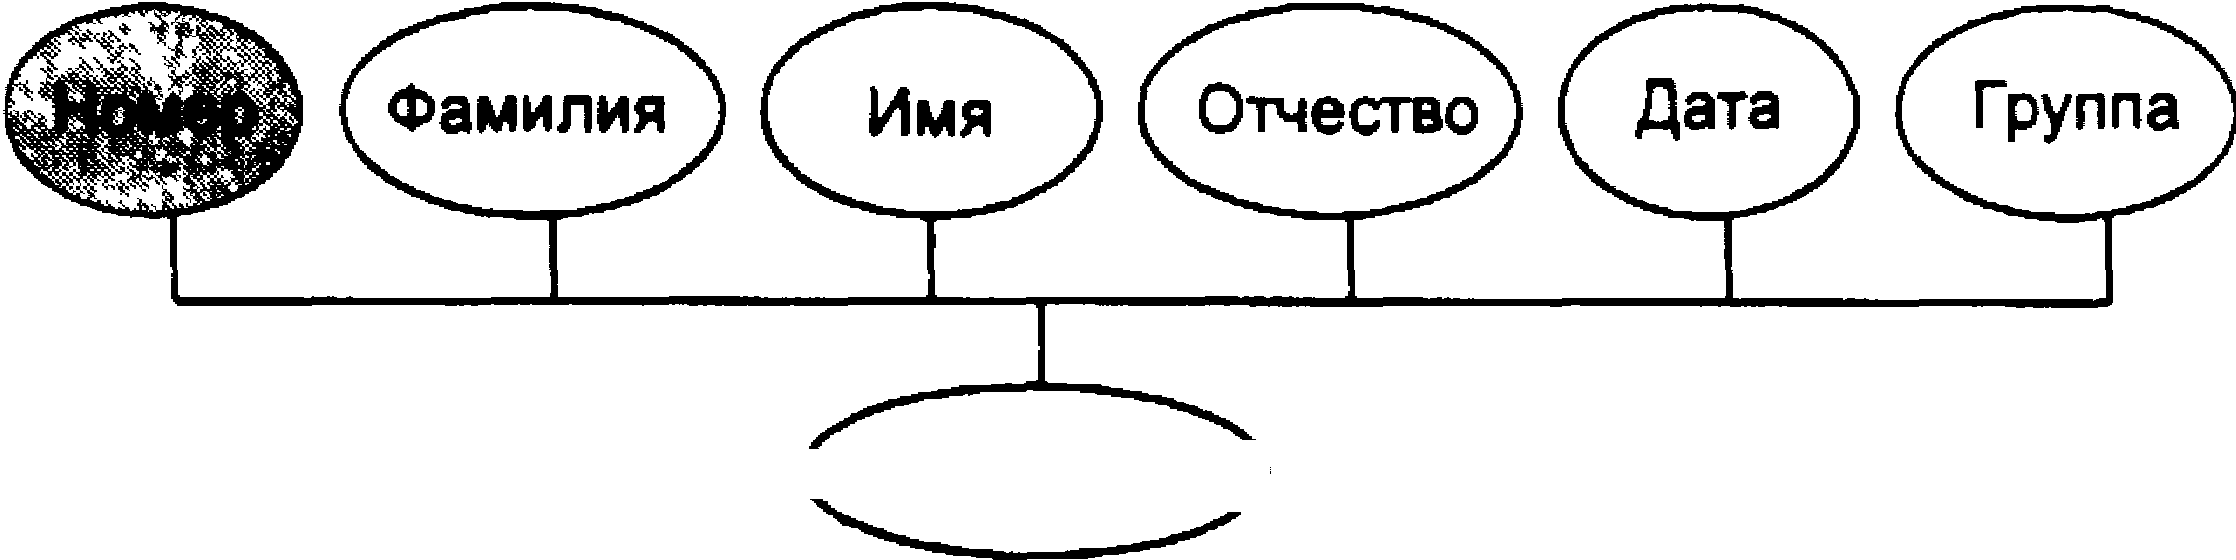 Метод т групп. Понятие информационного объекта. Нормализация отношений. Реляционный подход к построению модели данных. Связь понятий «объект» и «модель».. Понятие информационных отношений таблица.